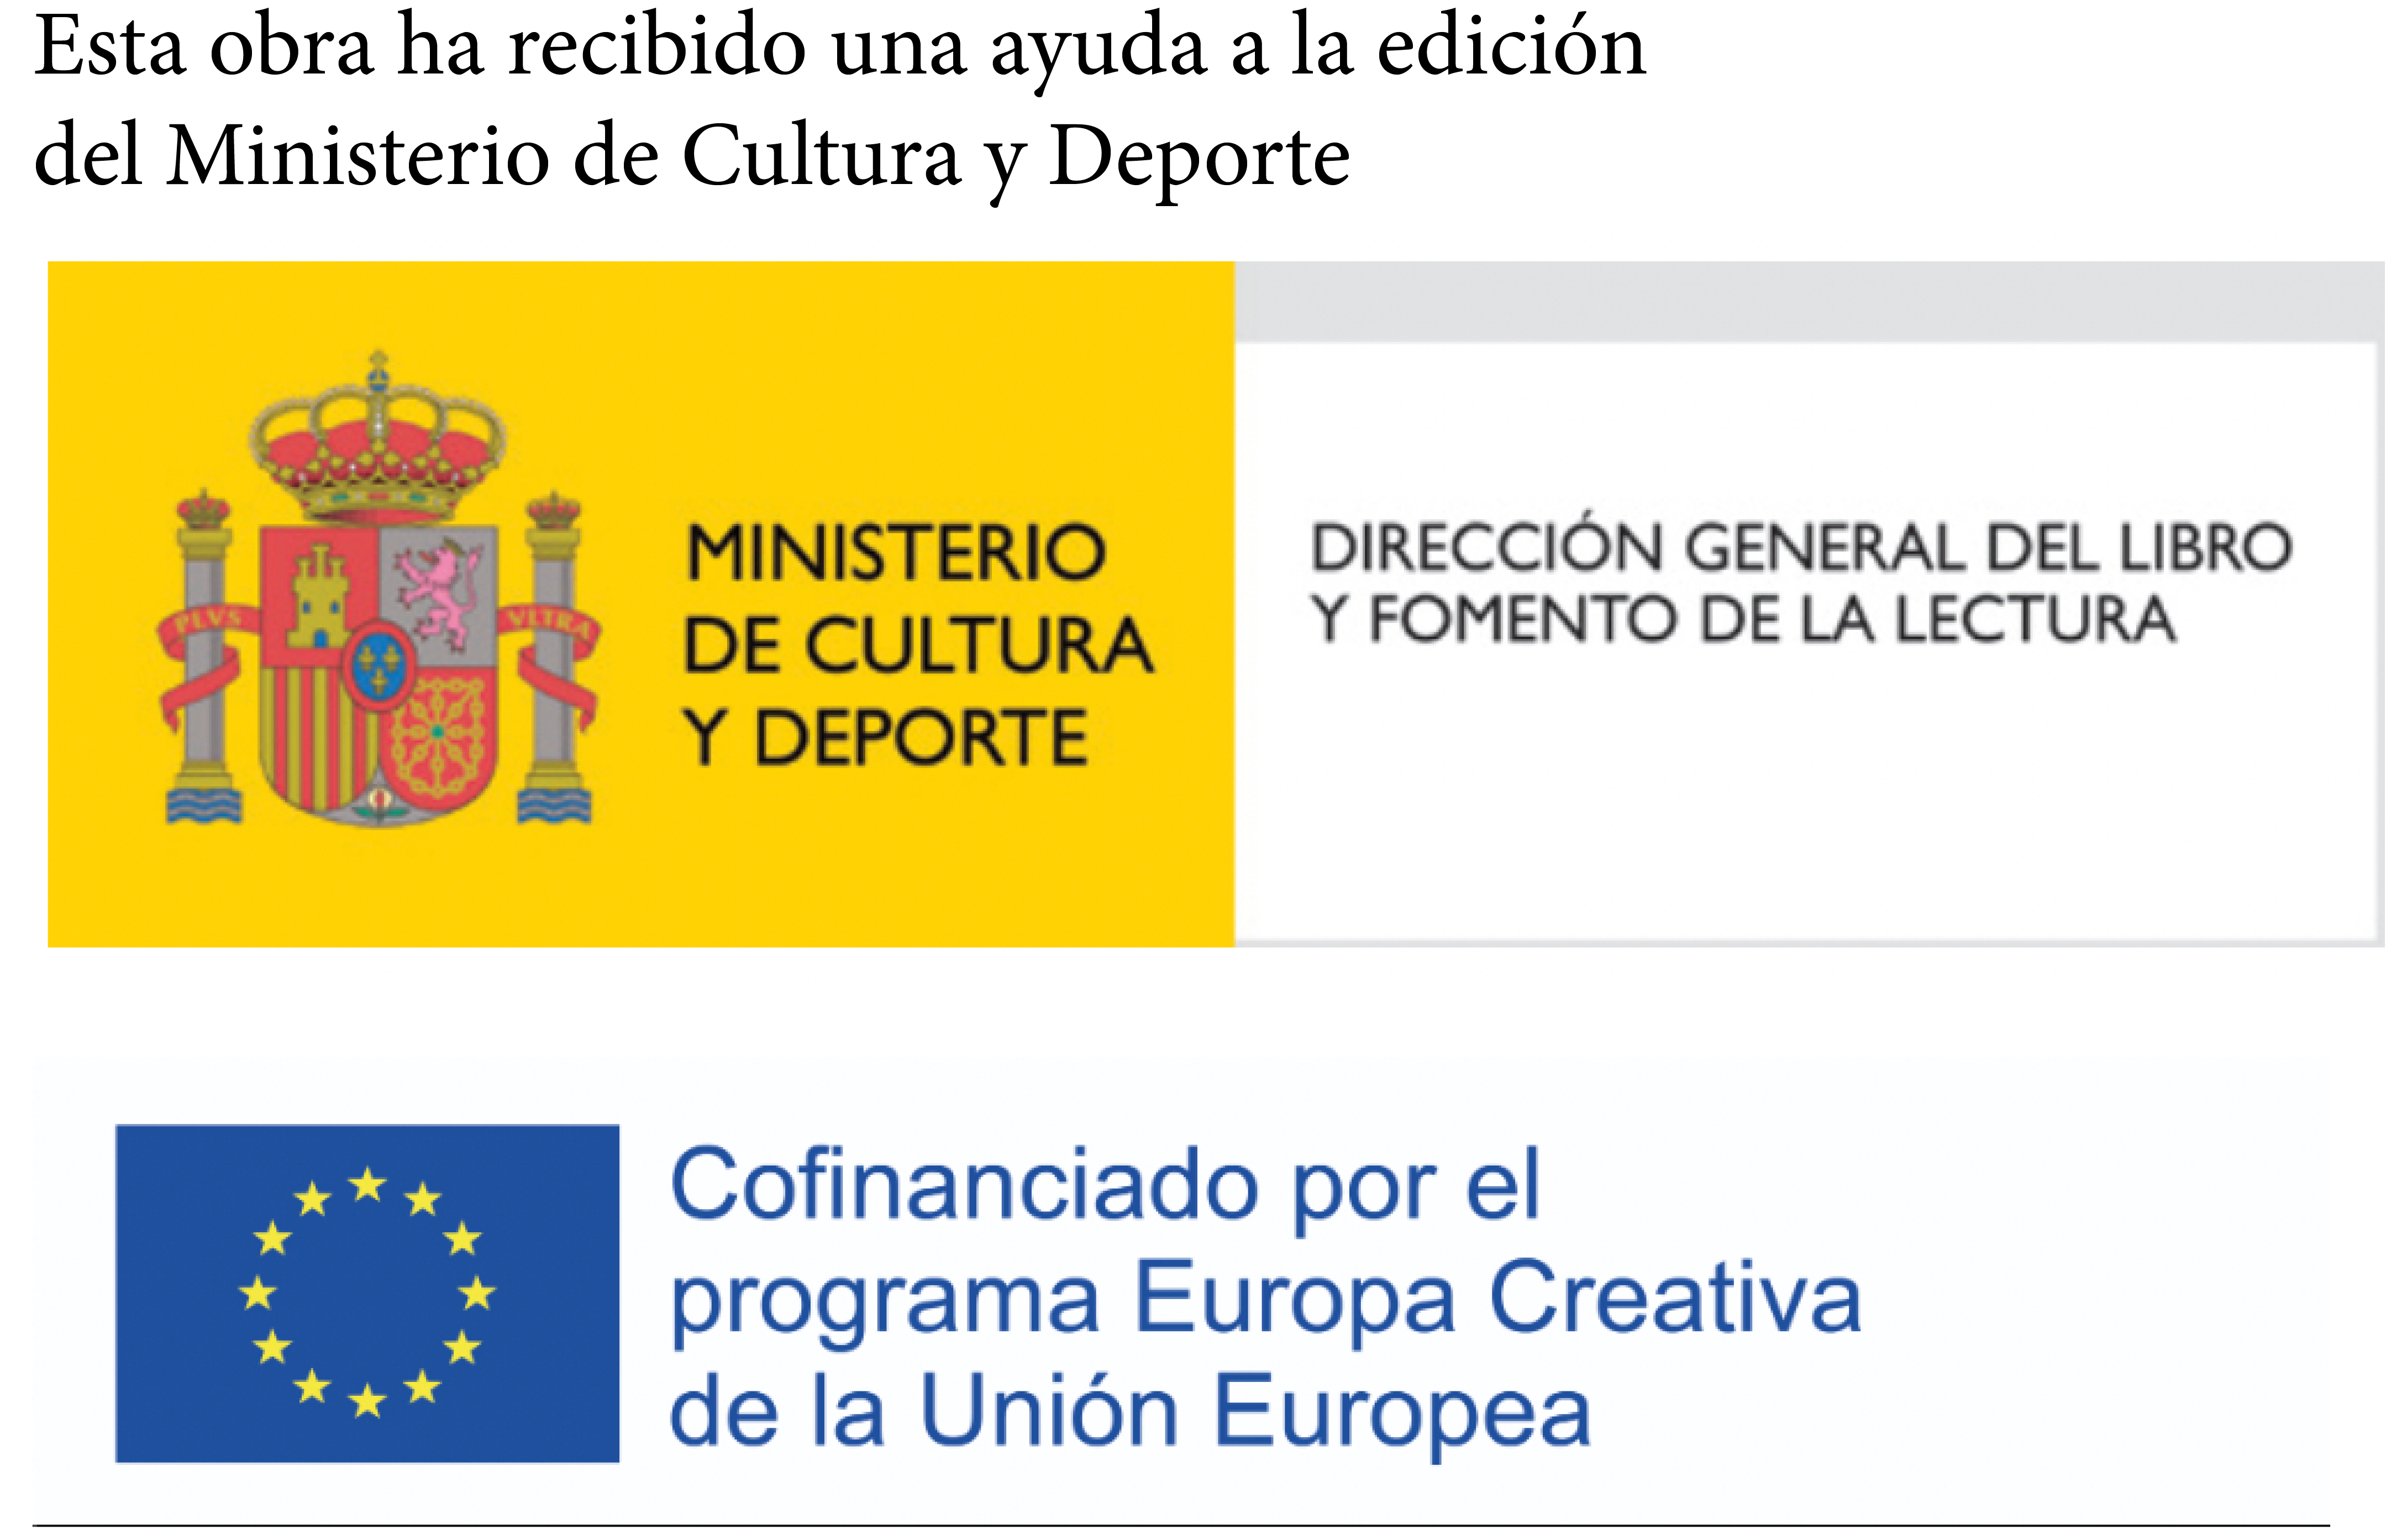 Logos Mixto - Europa Creativa y Ministerio de Cultura y Deporte